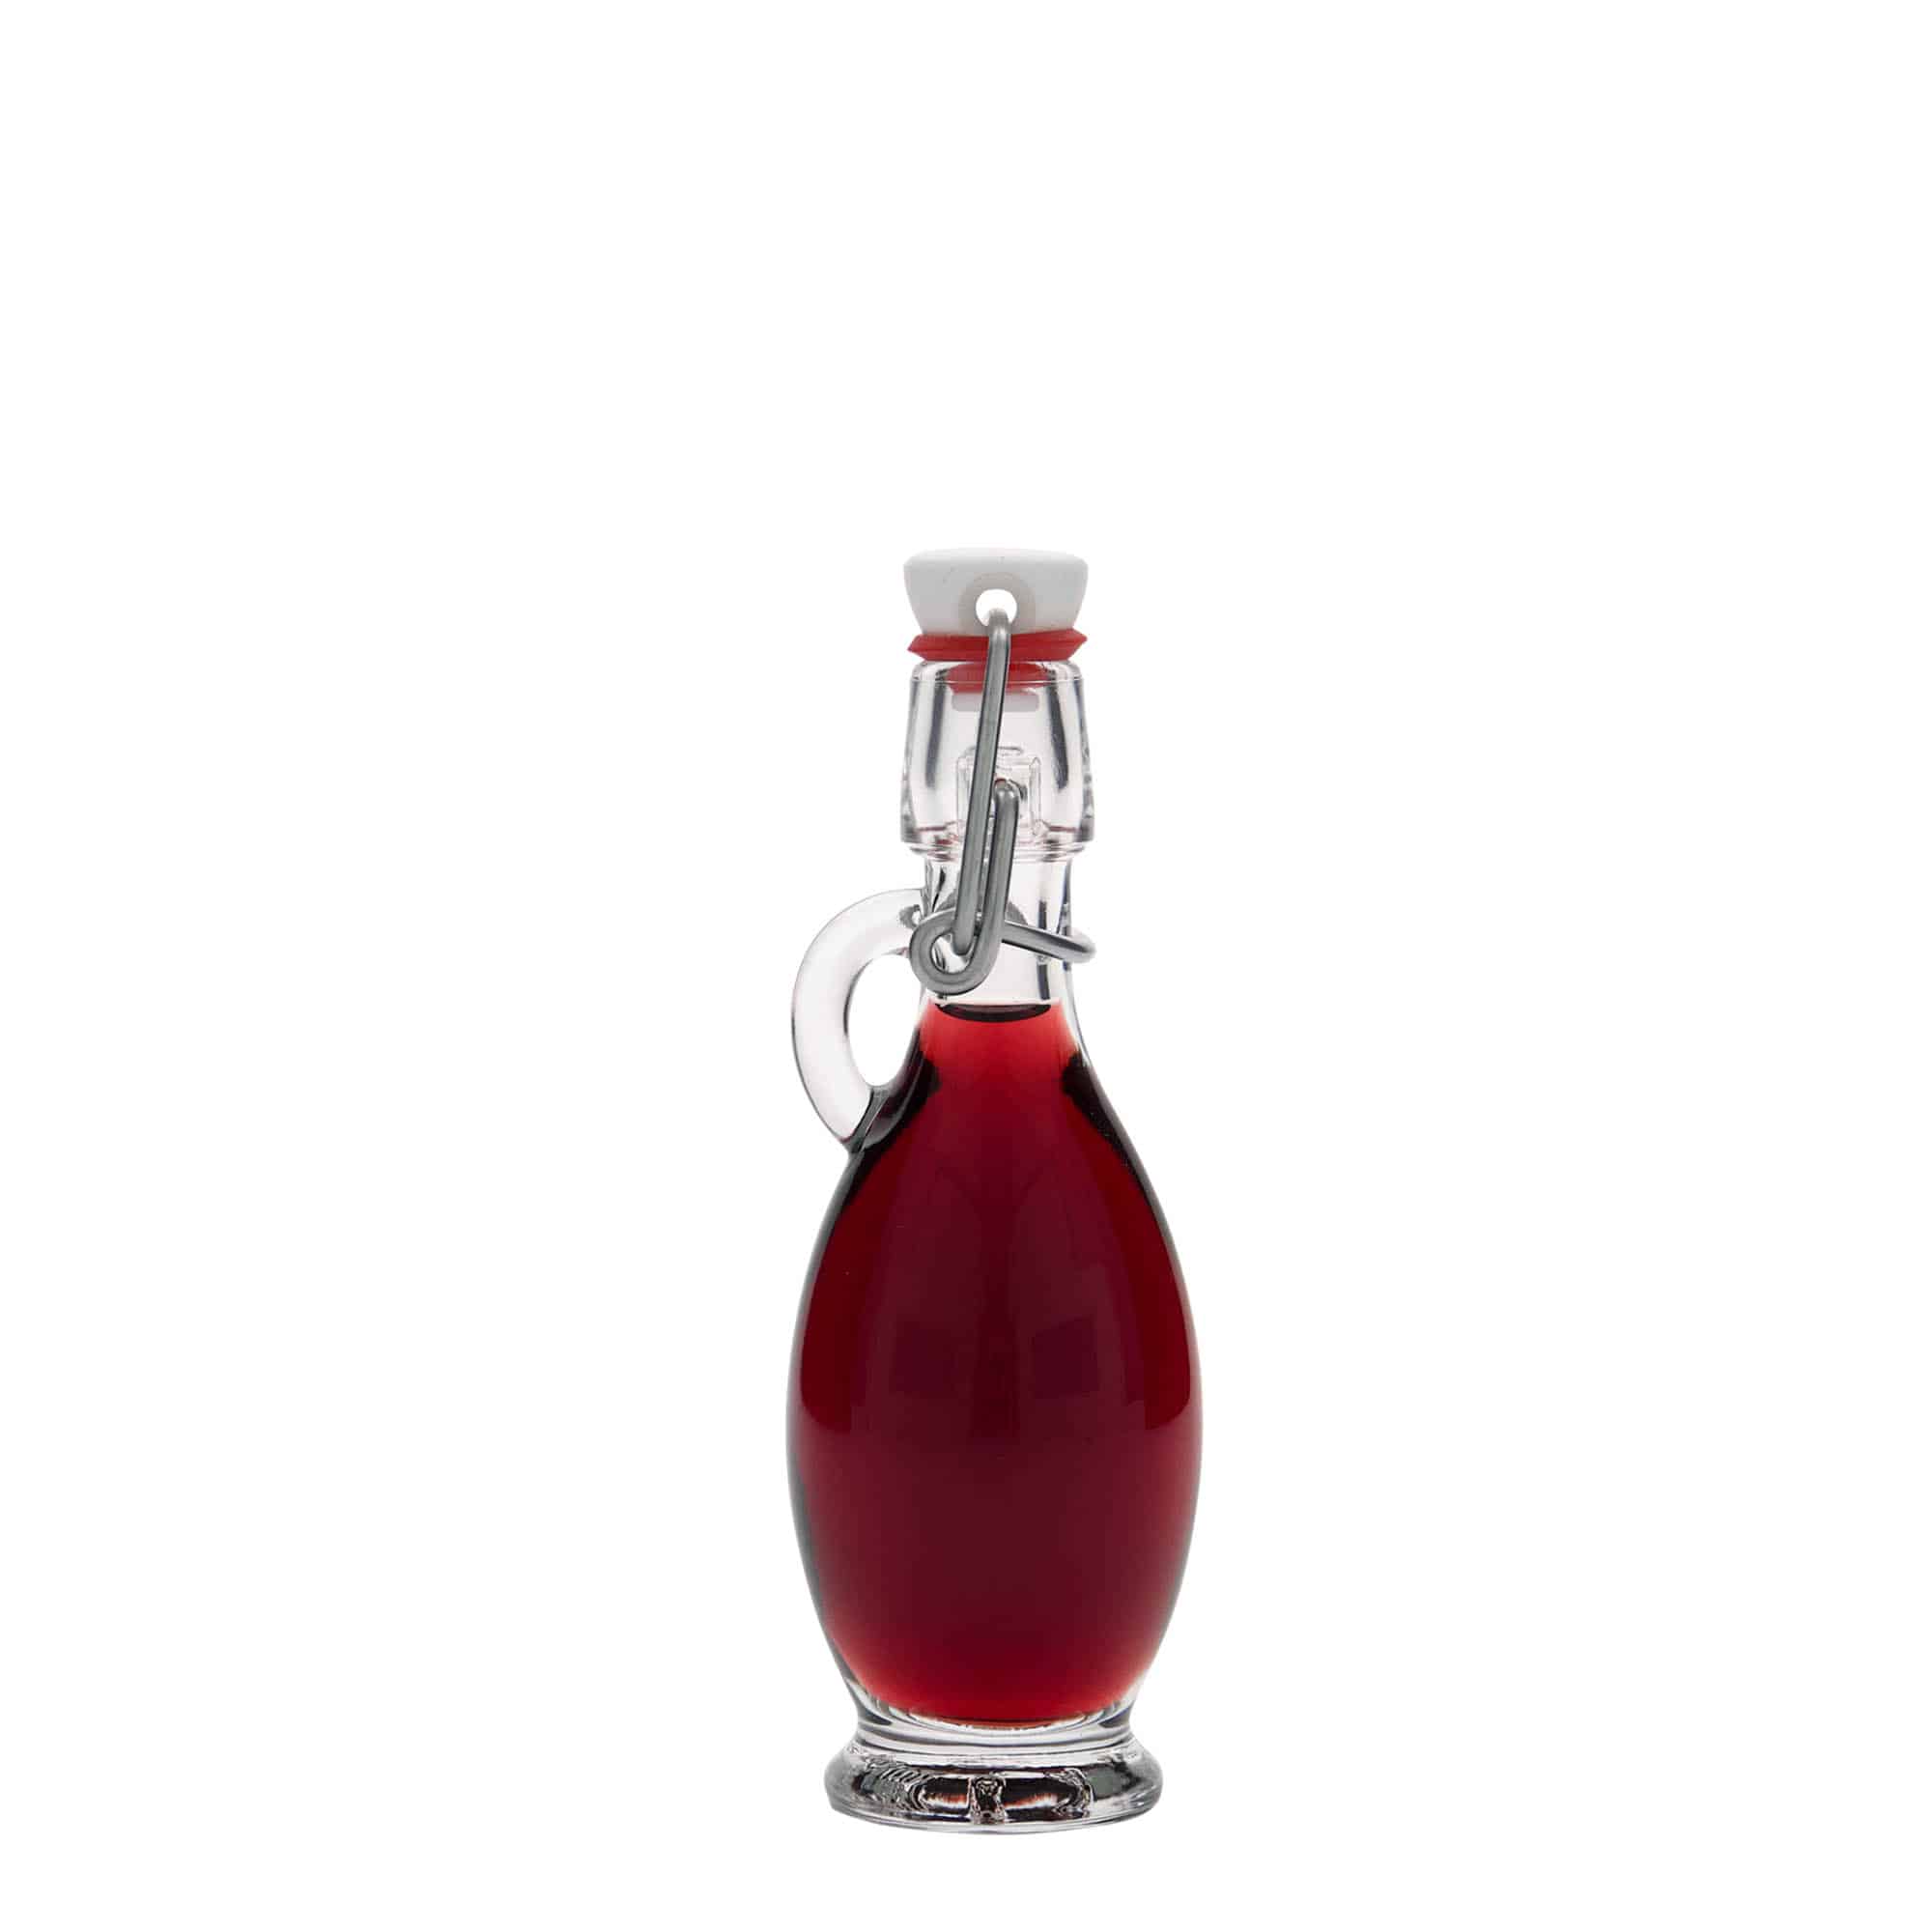 40 ml glass bottle 'Egizia', closure: swing top